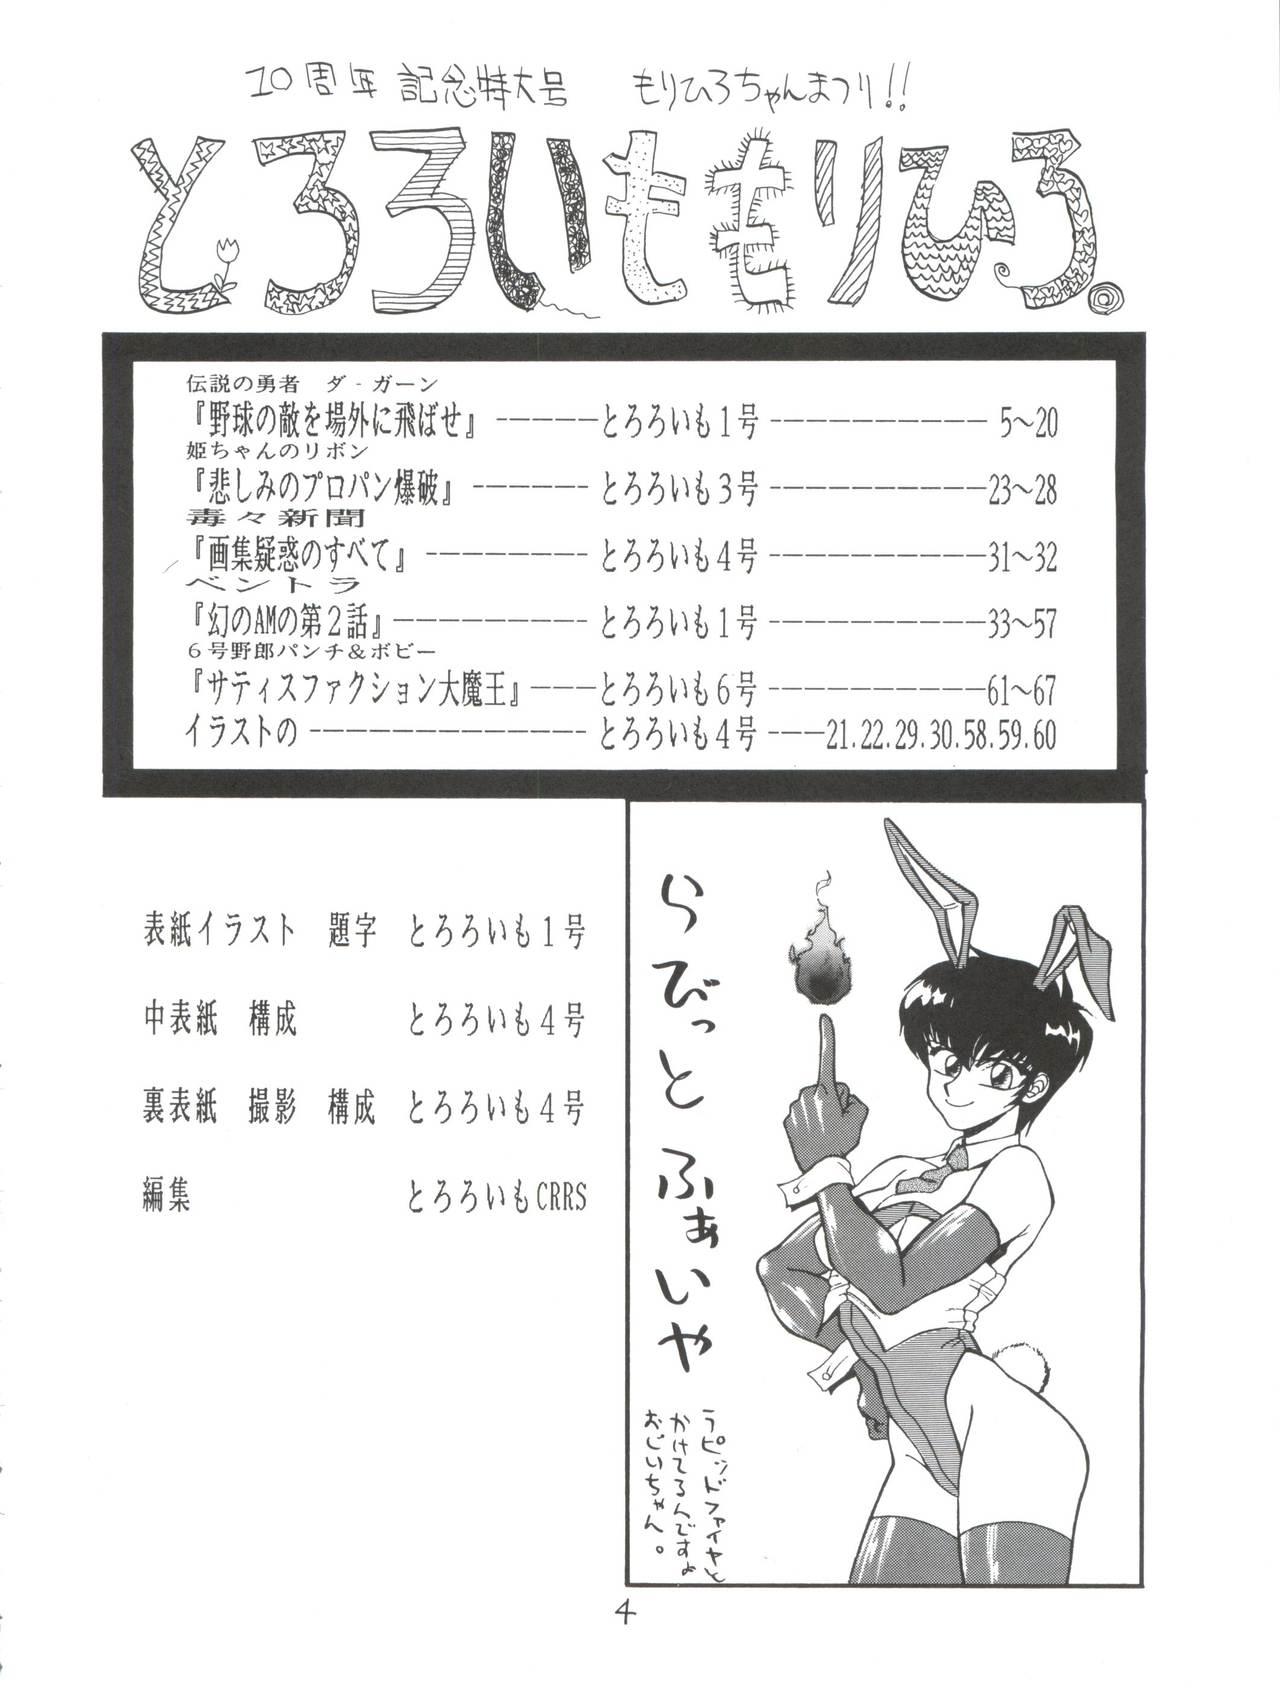 Milfporn Tororoimo Morihiro - Dragon quest Hime chans ribbon Densetsu no yuusha da garn Punishment - Page 4